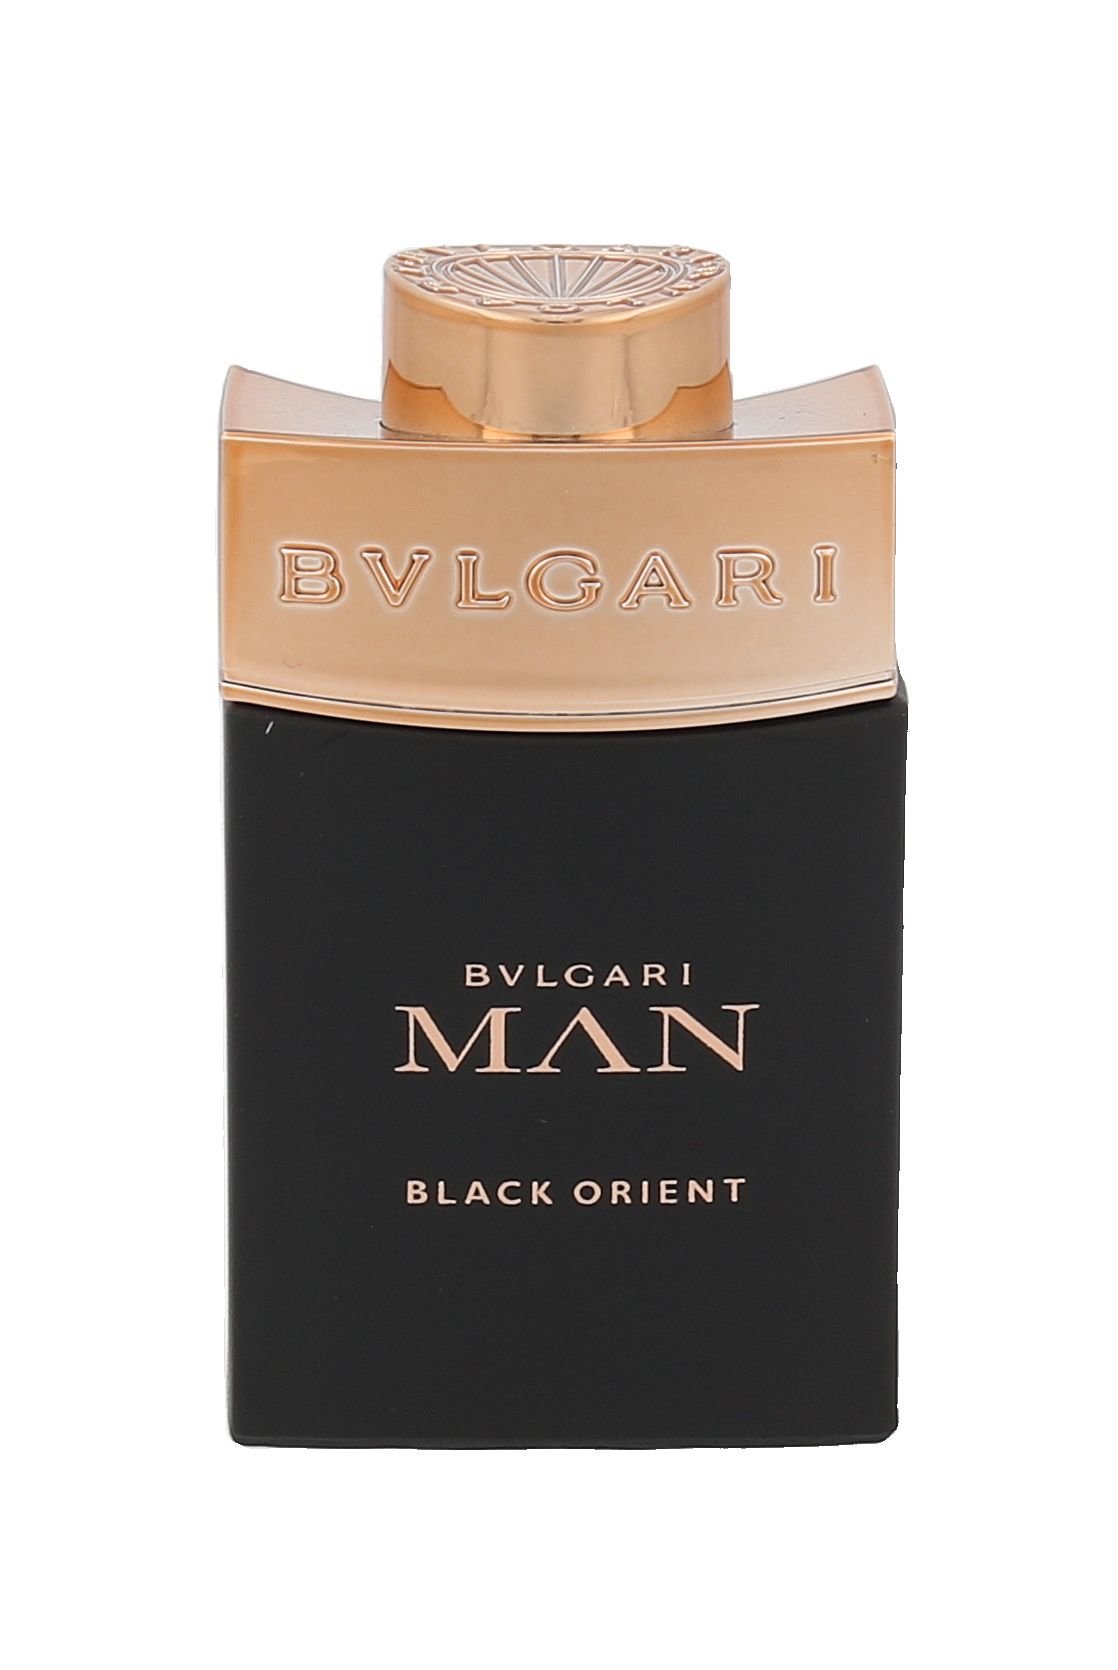 Bvlgari Man Black Orient 15ml Kvepalai Vyrams Parfum